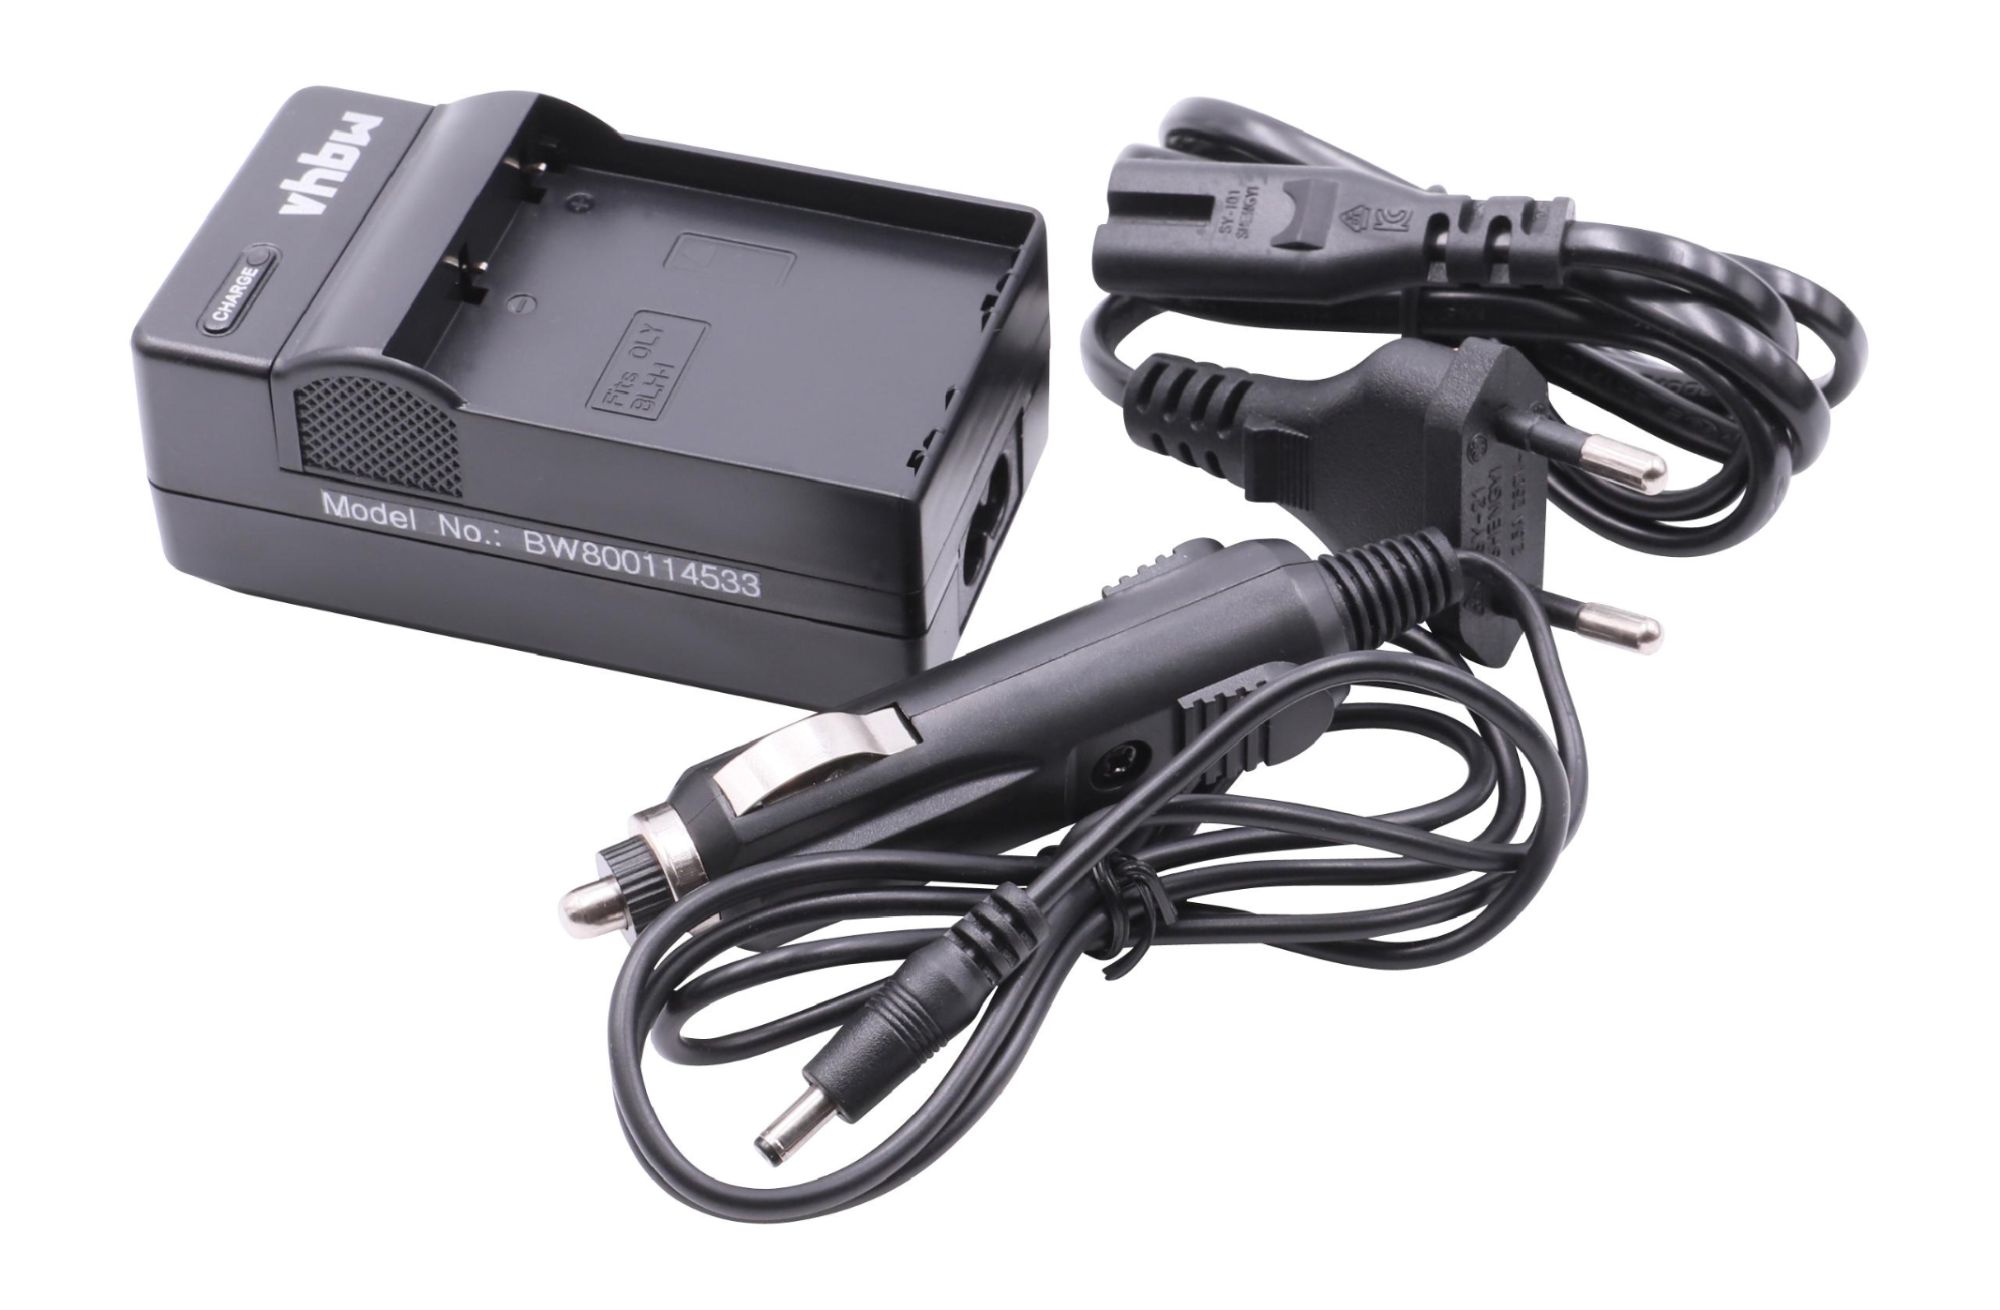 vhbw Station de chargement chargeur 220V pour batterie compatible avec OM-D E-M1 Mark III appareil photo